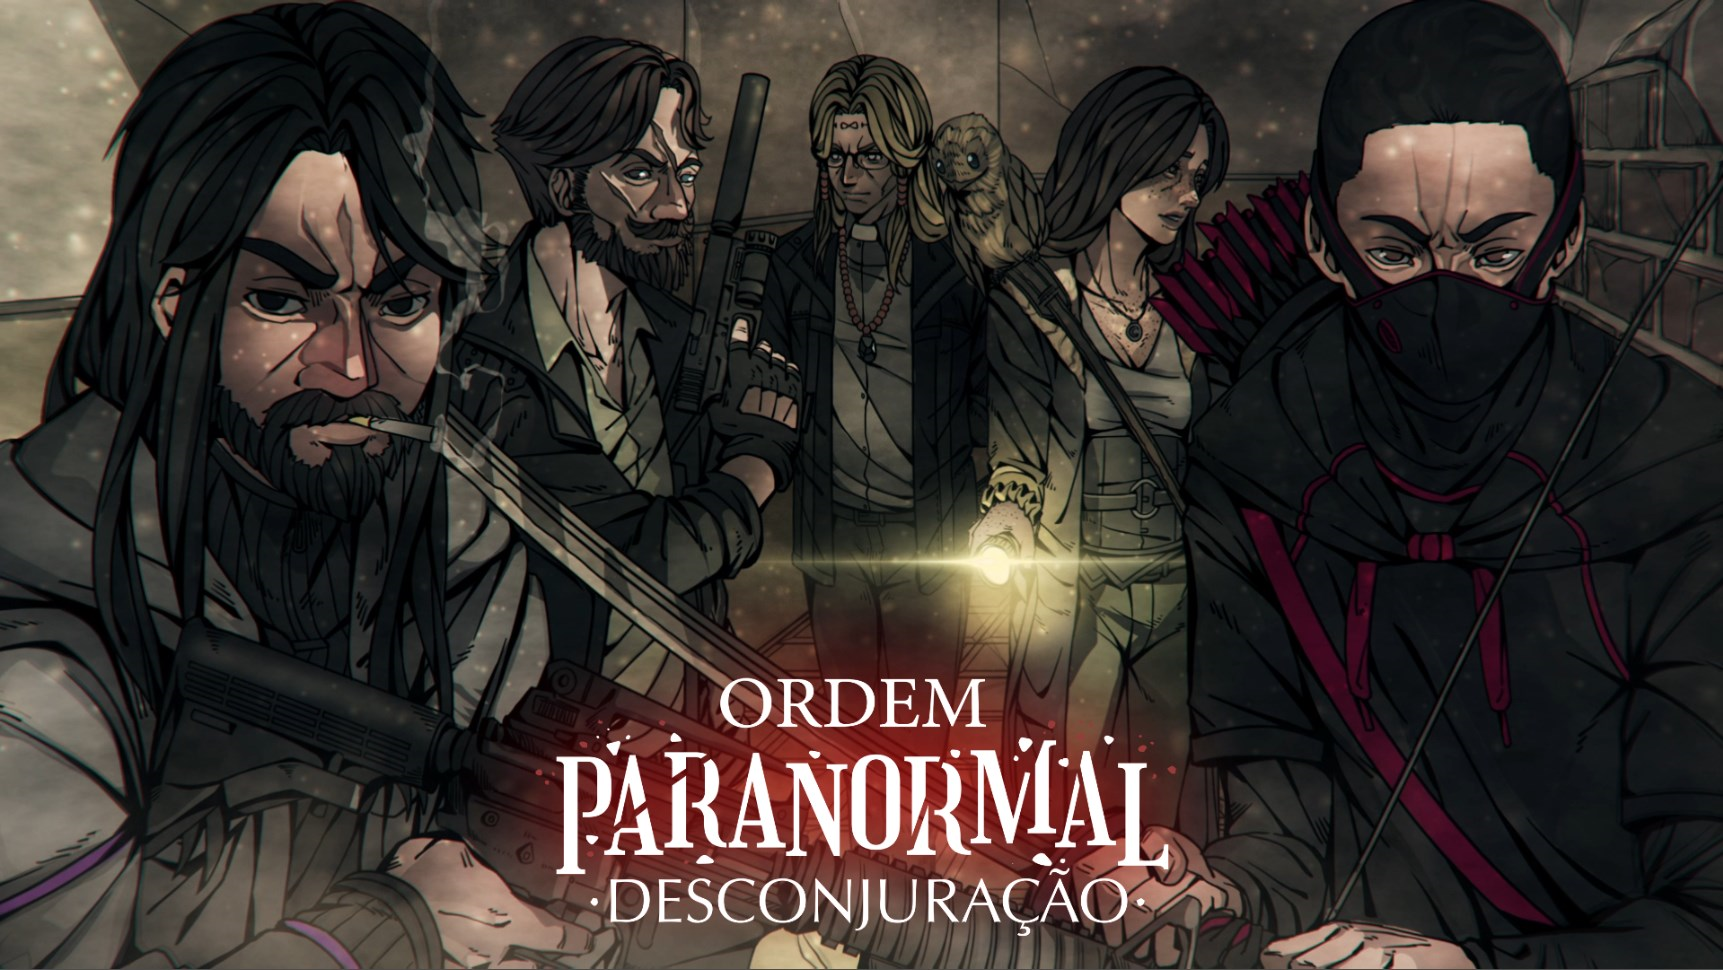 Ordem Paranormal RPG — Resenha - Movimento RPG